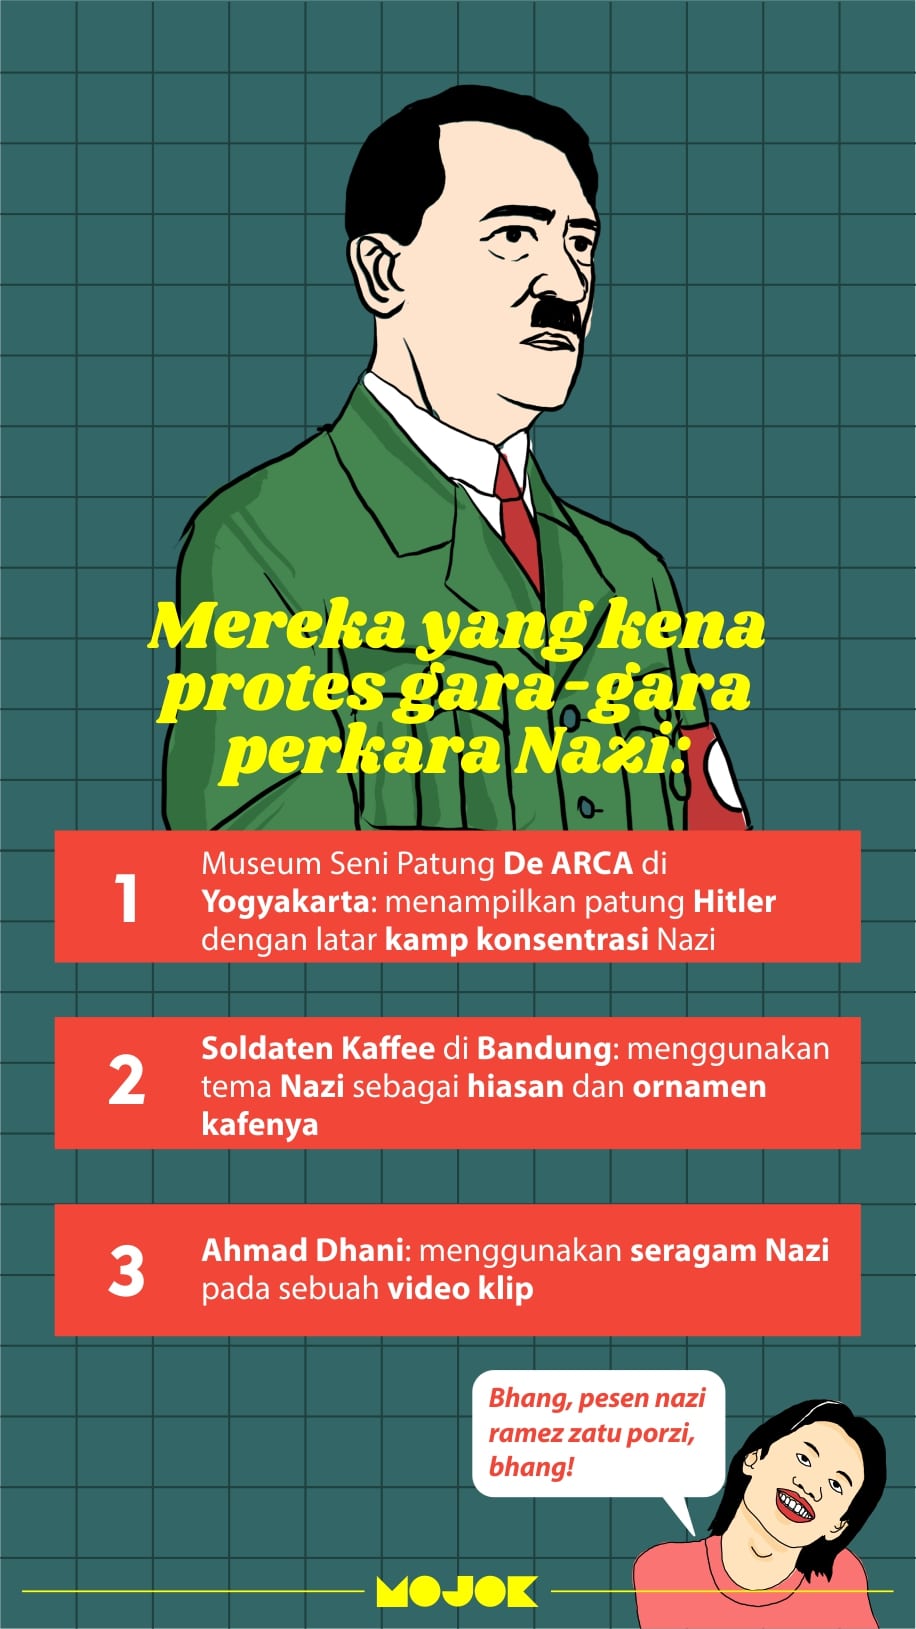 Perkara nazi